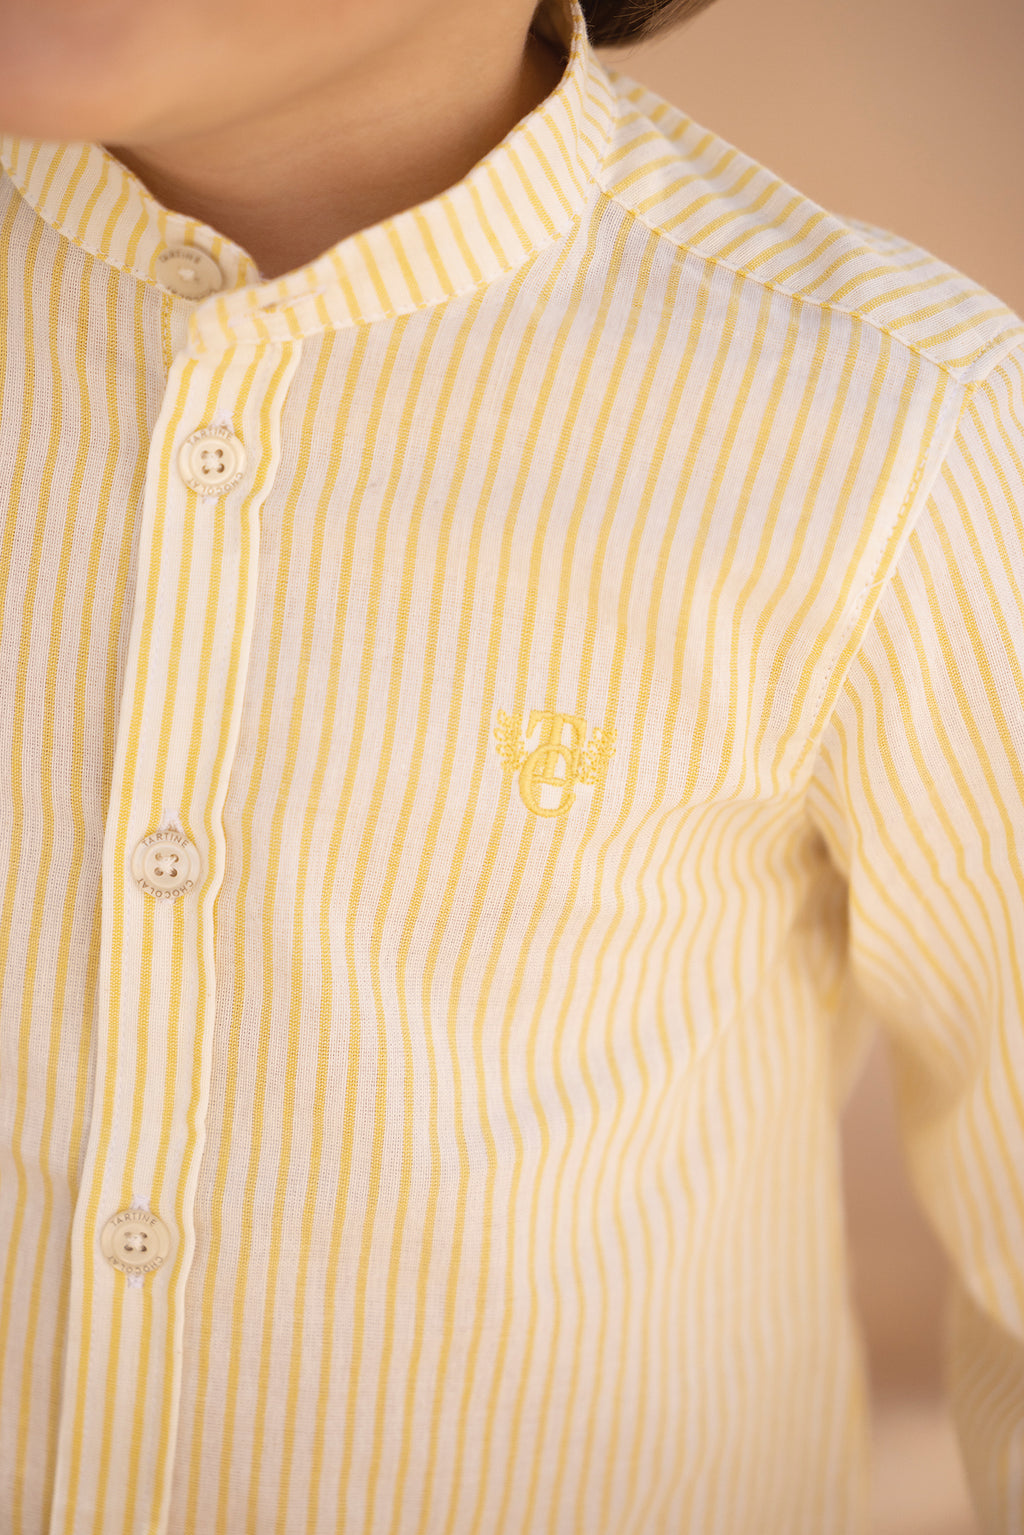 Shirt - Streifens Gelb blass